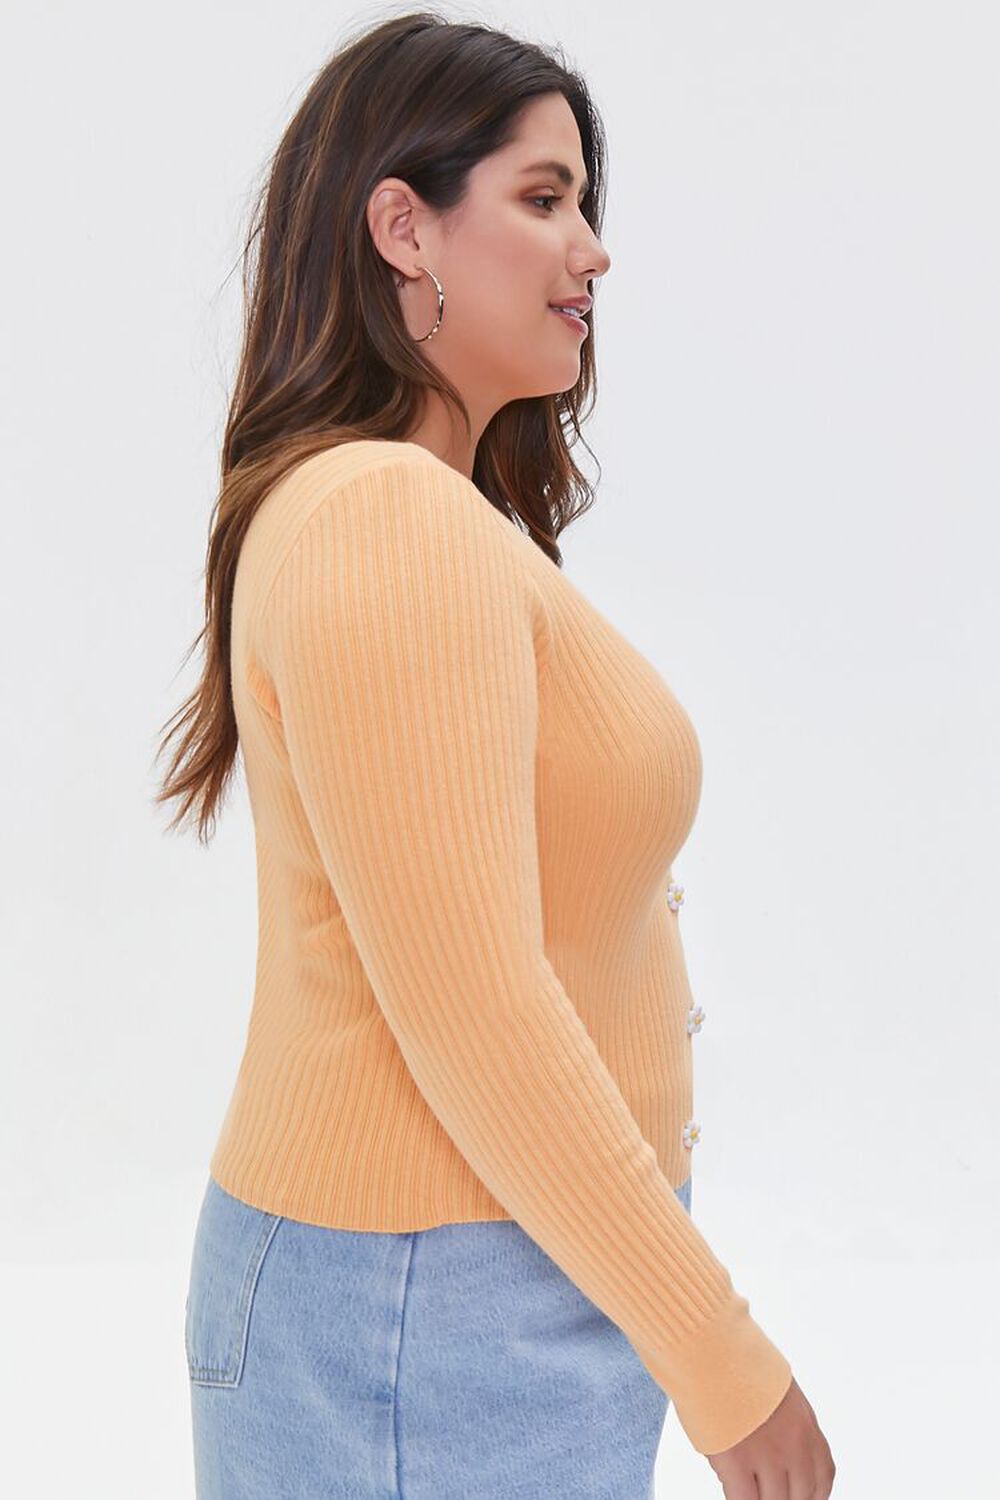 CANTALOUPE Plus Size Ribbed Cardigan Sweater, image 2